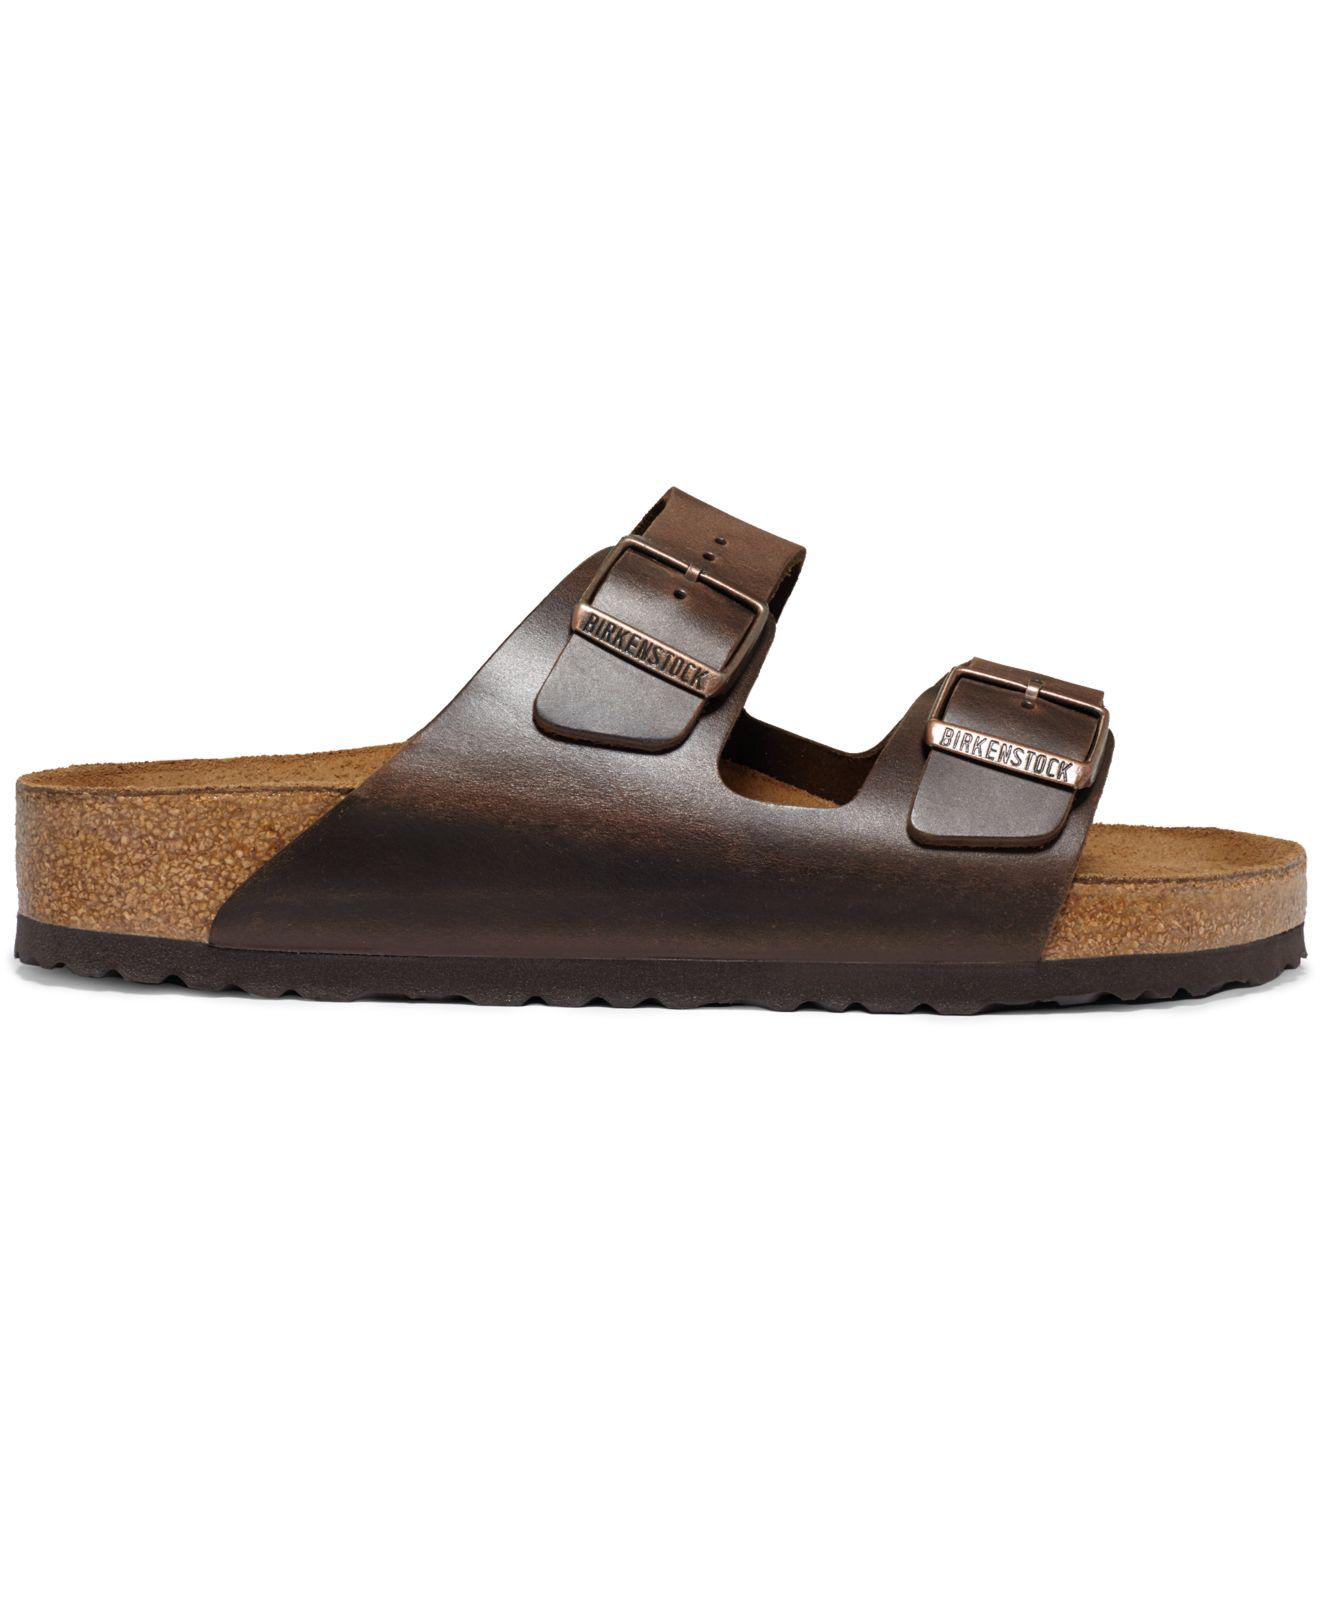 Birkenstock Men's Shoes, Arizona Leather Sandals in Brown for Men - Lyst